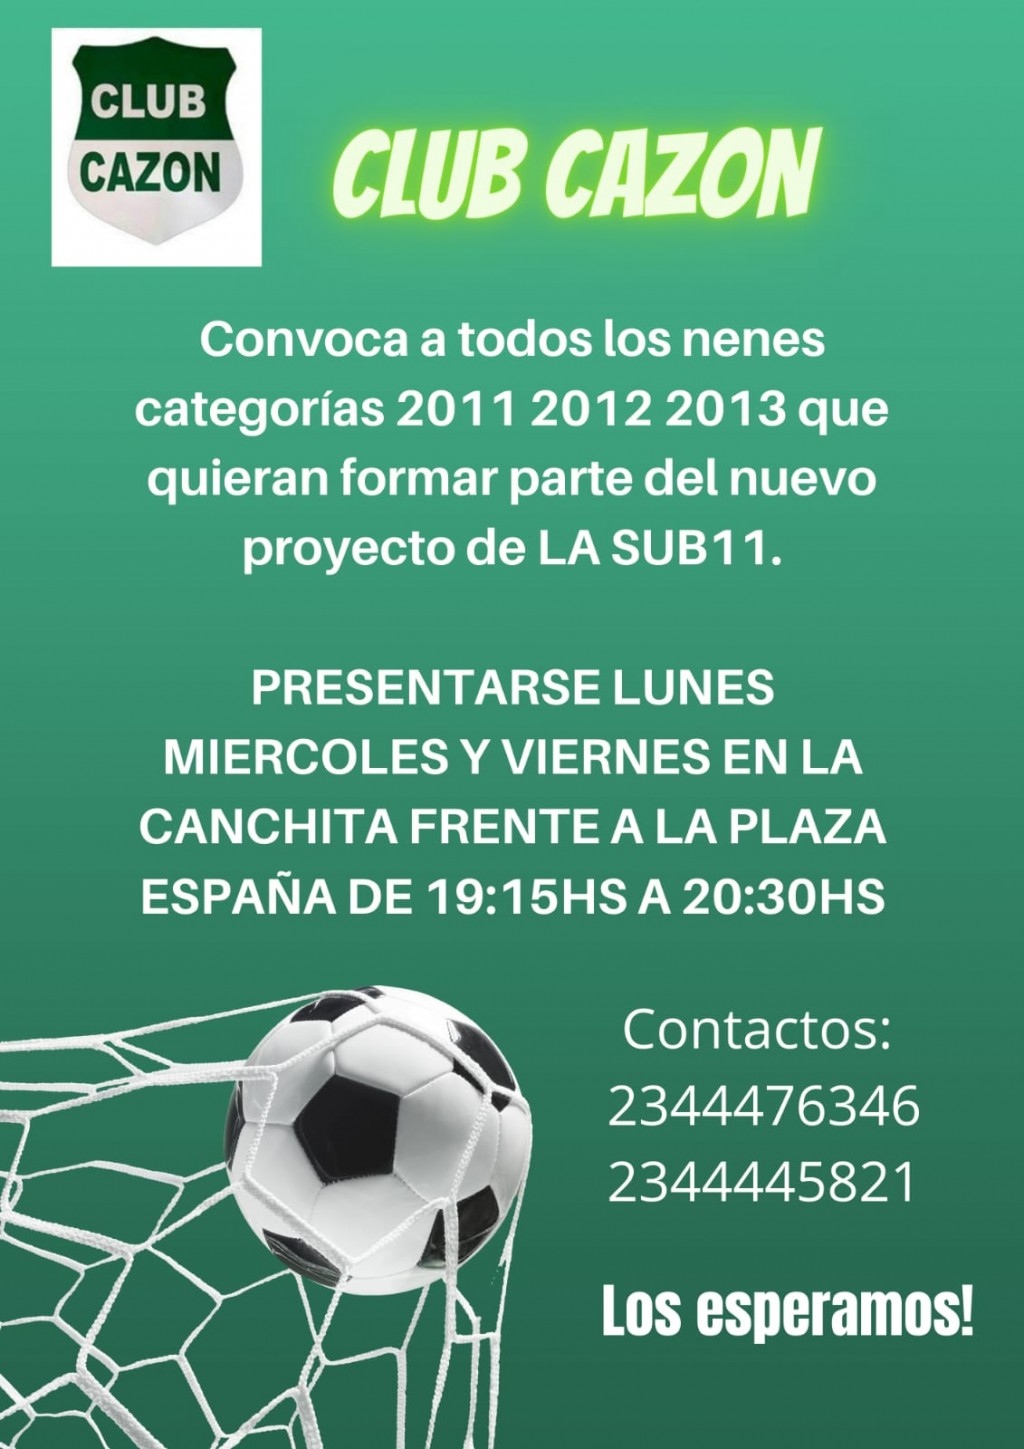 Fútbol: Club Cazón convoca a jugadores para formar la sub11 